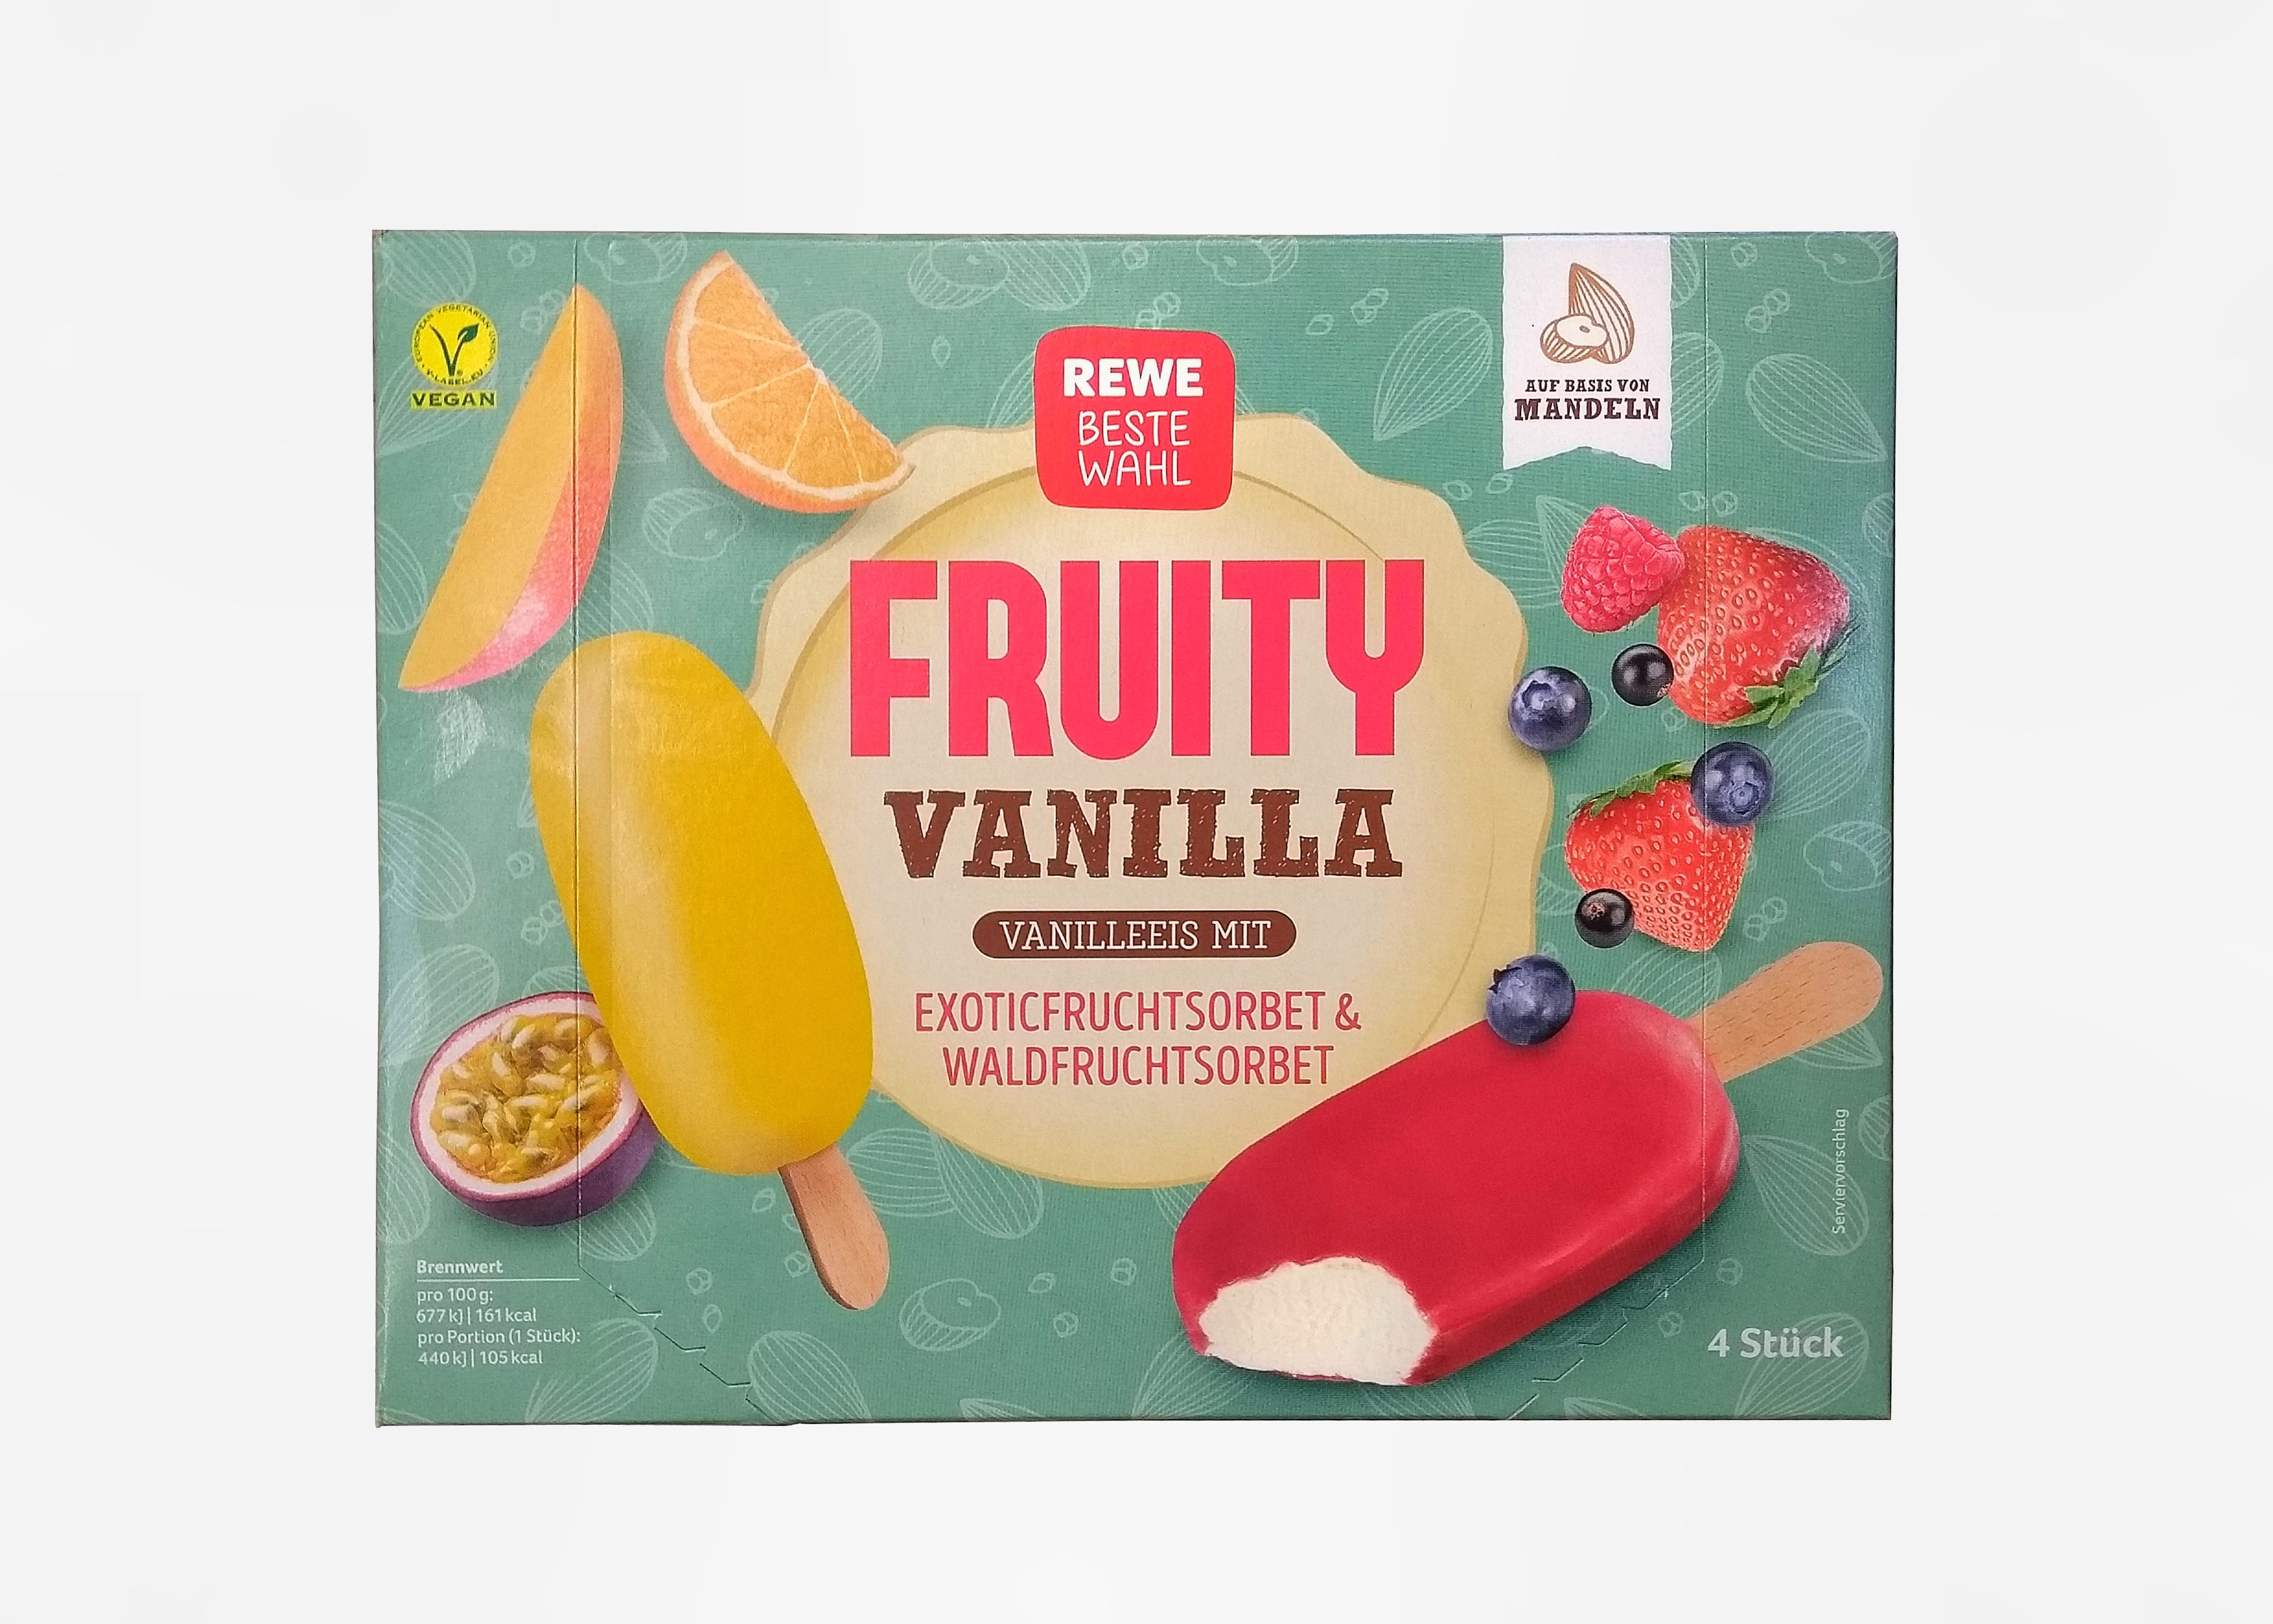 Fruity Vanilla Vanilleeis mit Fruchtsorbet